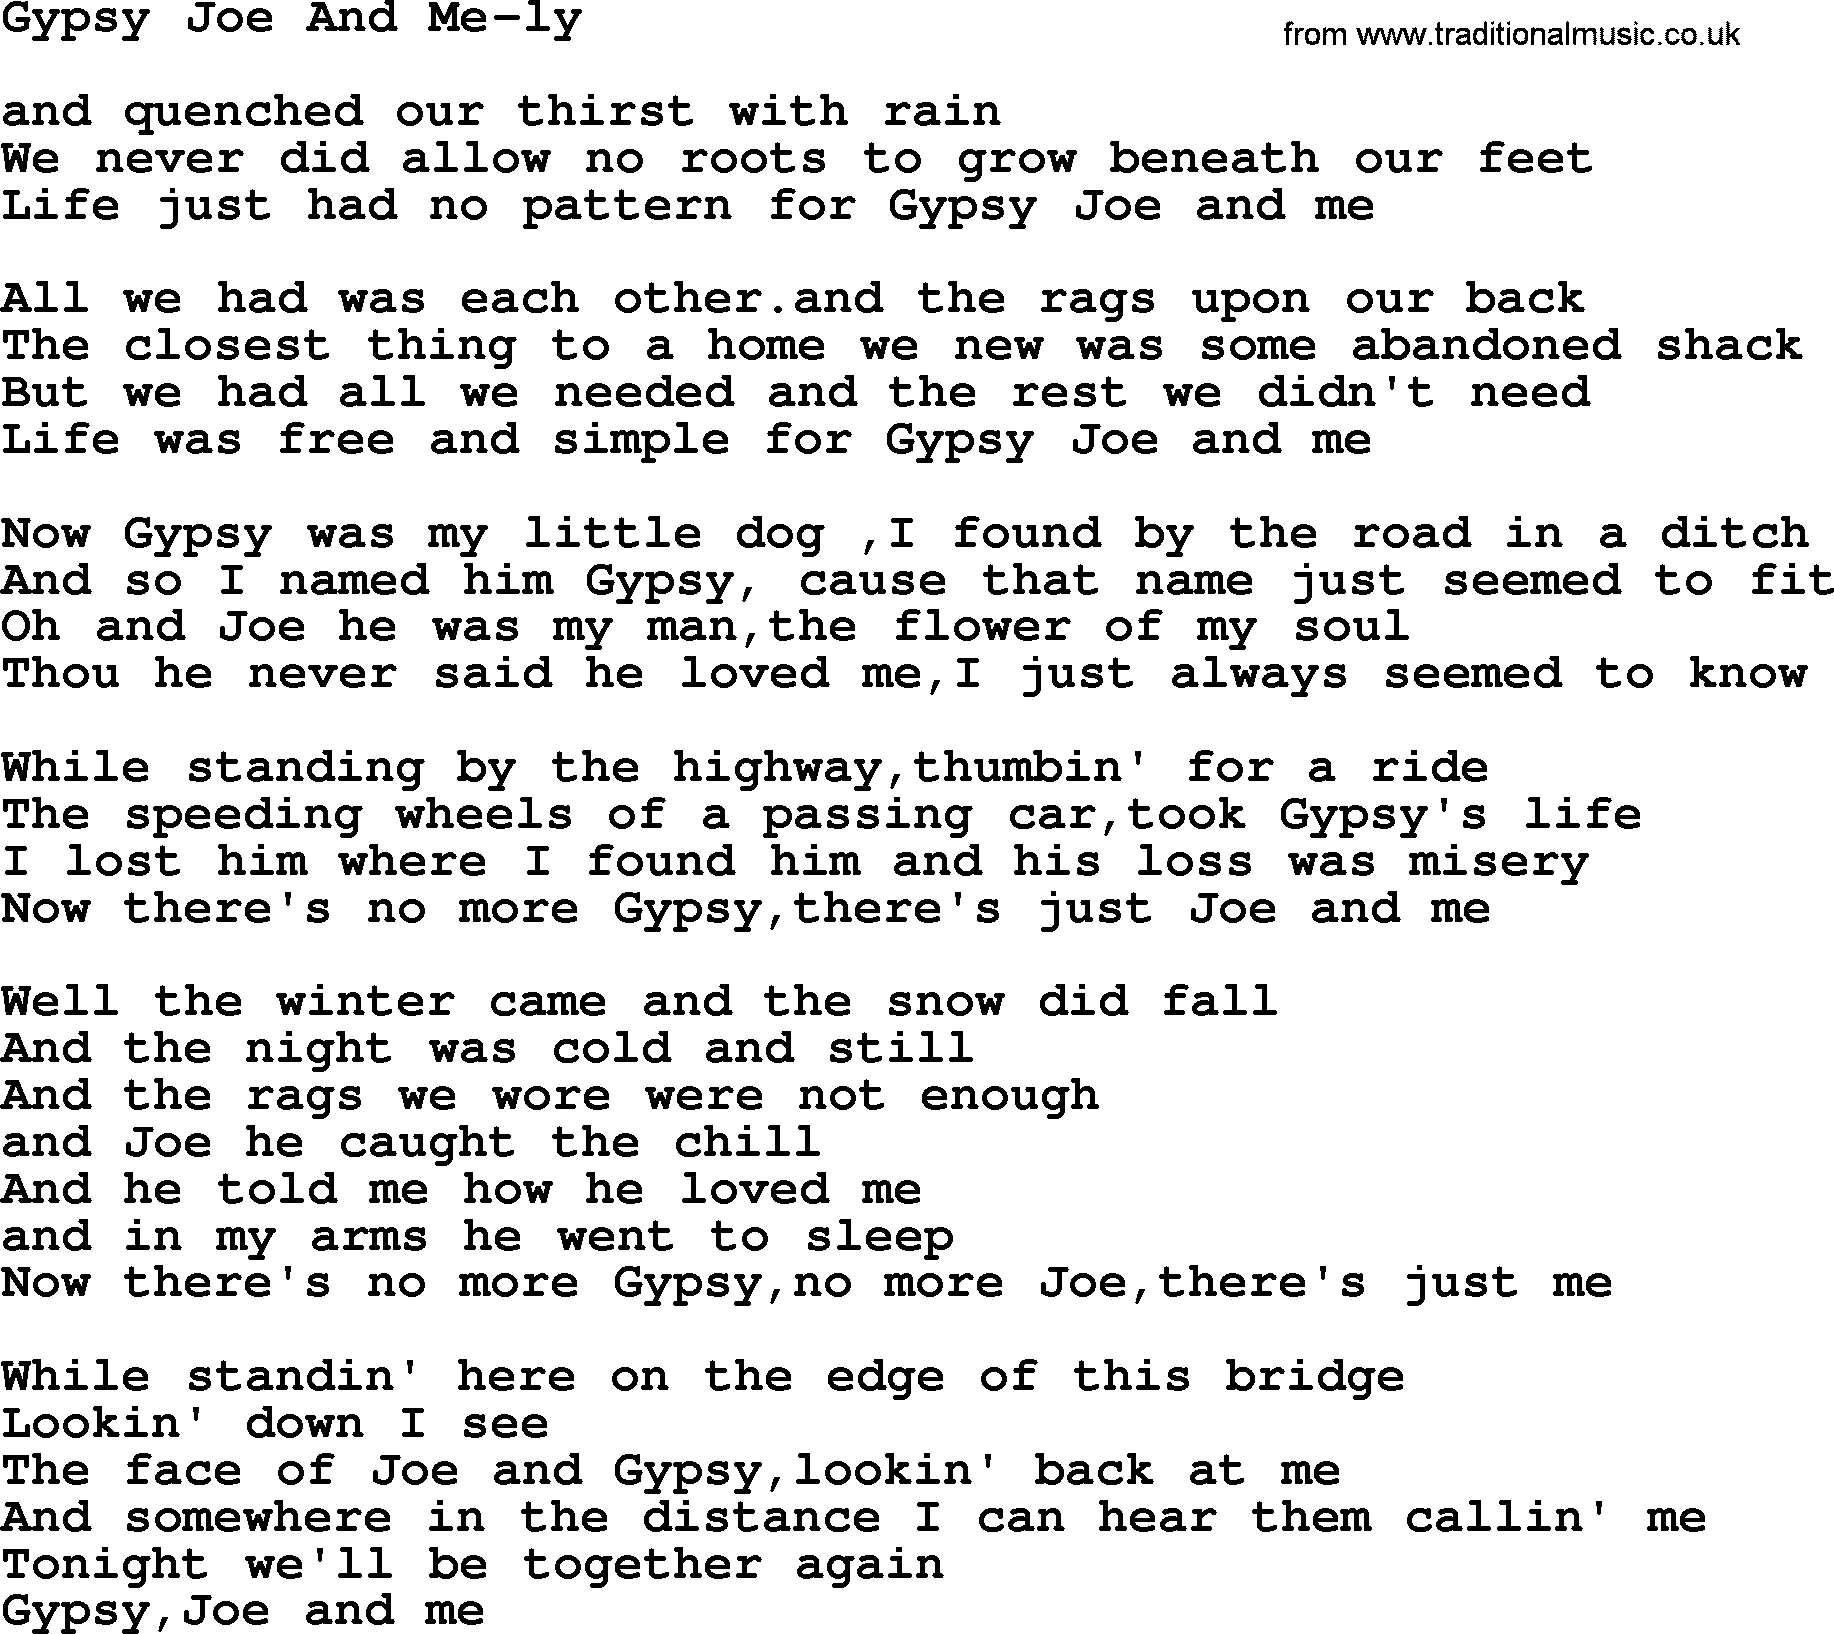 Dolly Parton song Gypsy Joe And Me-ly.txt lyrics